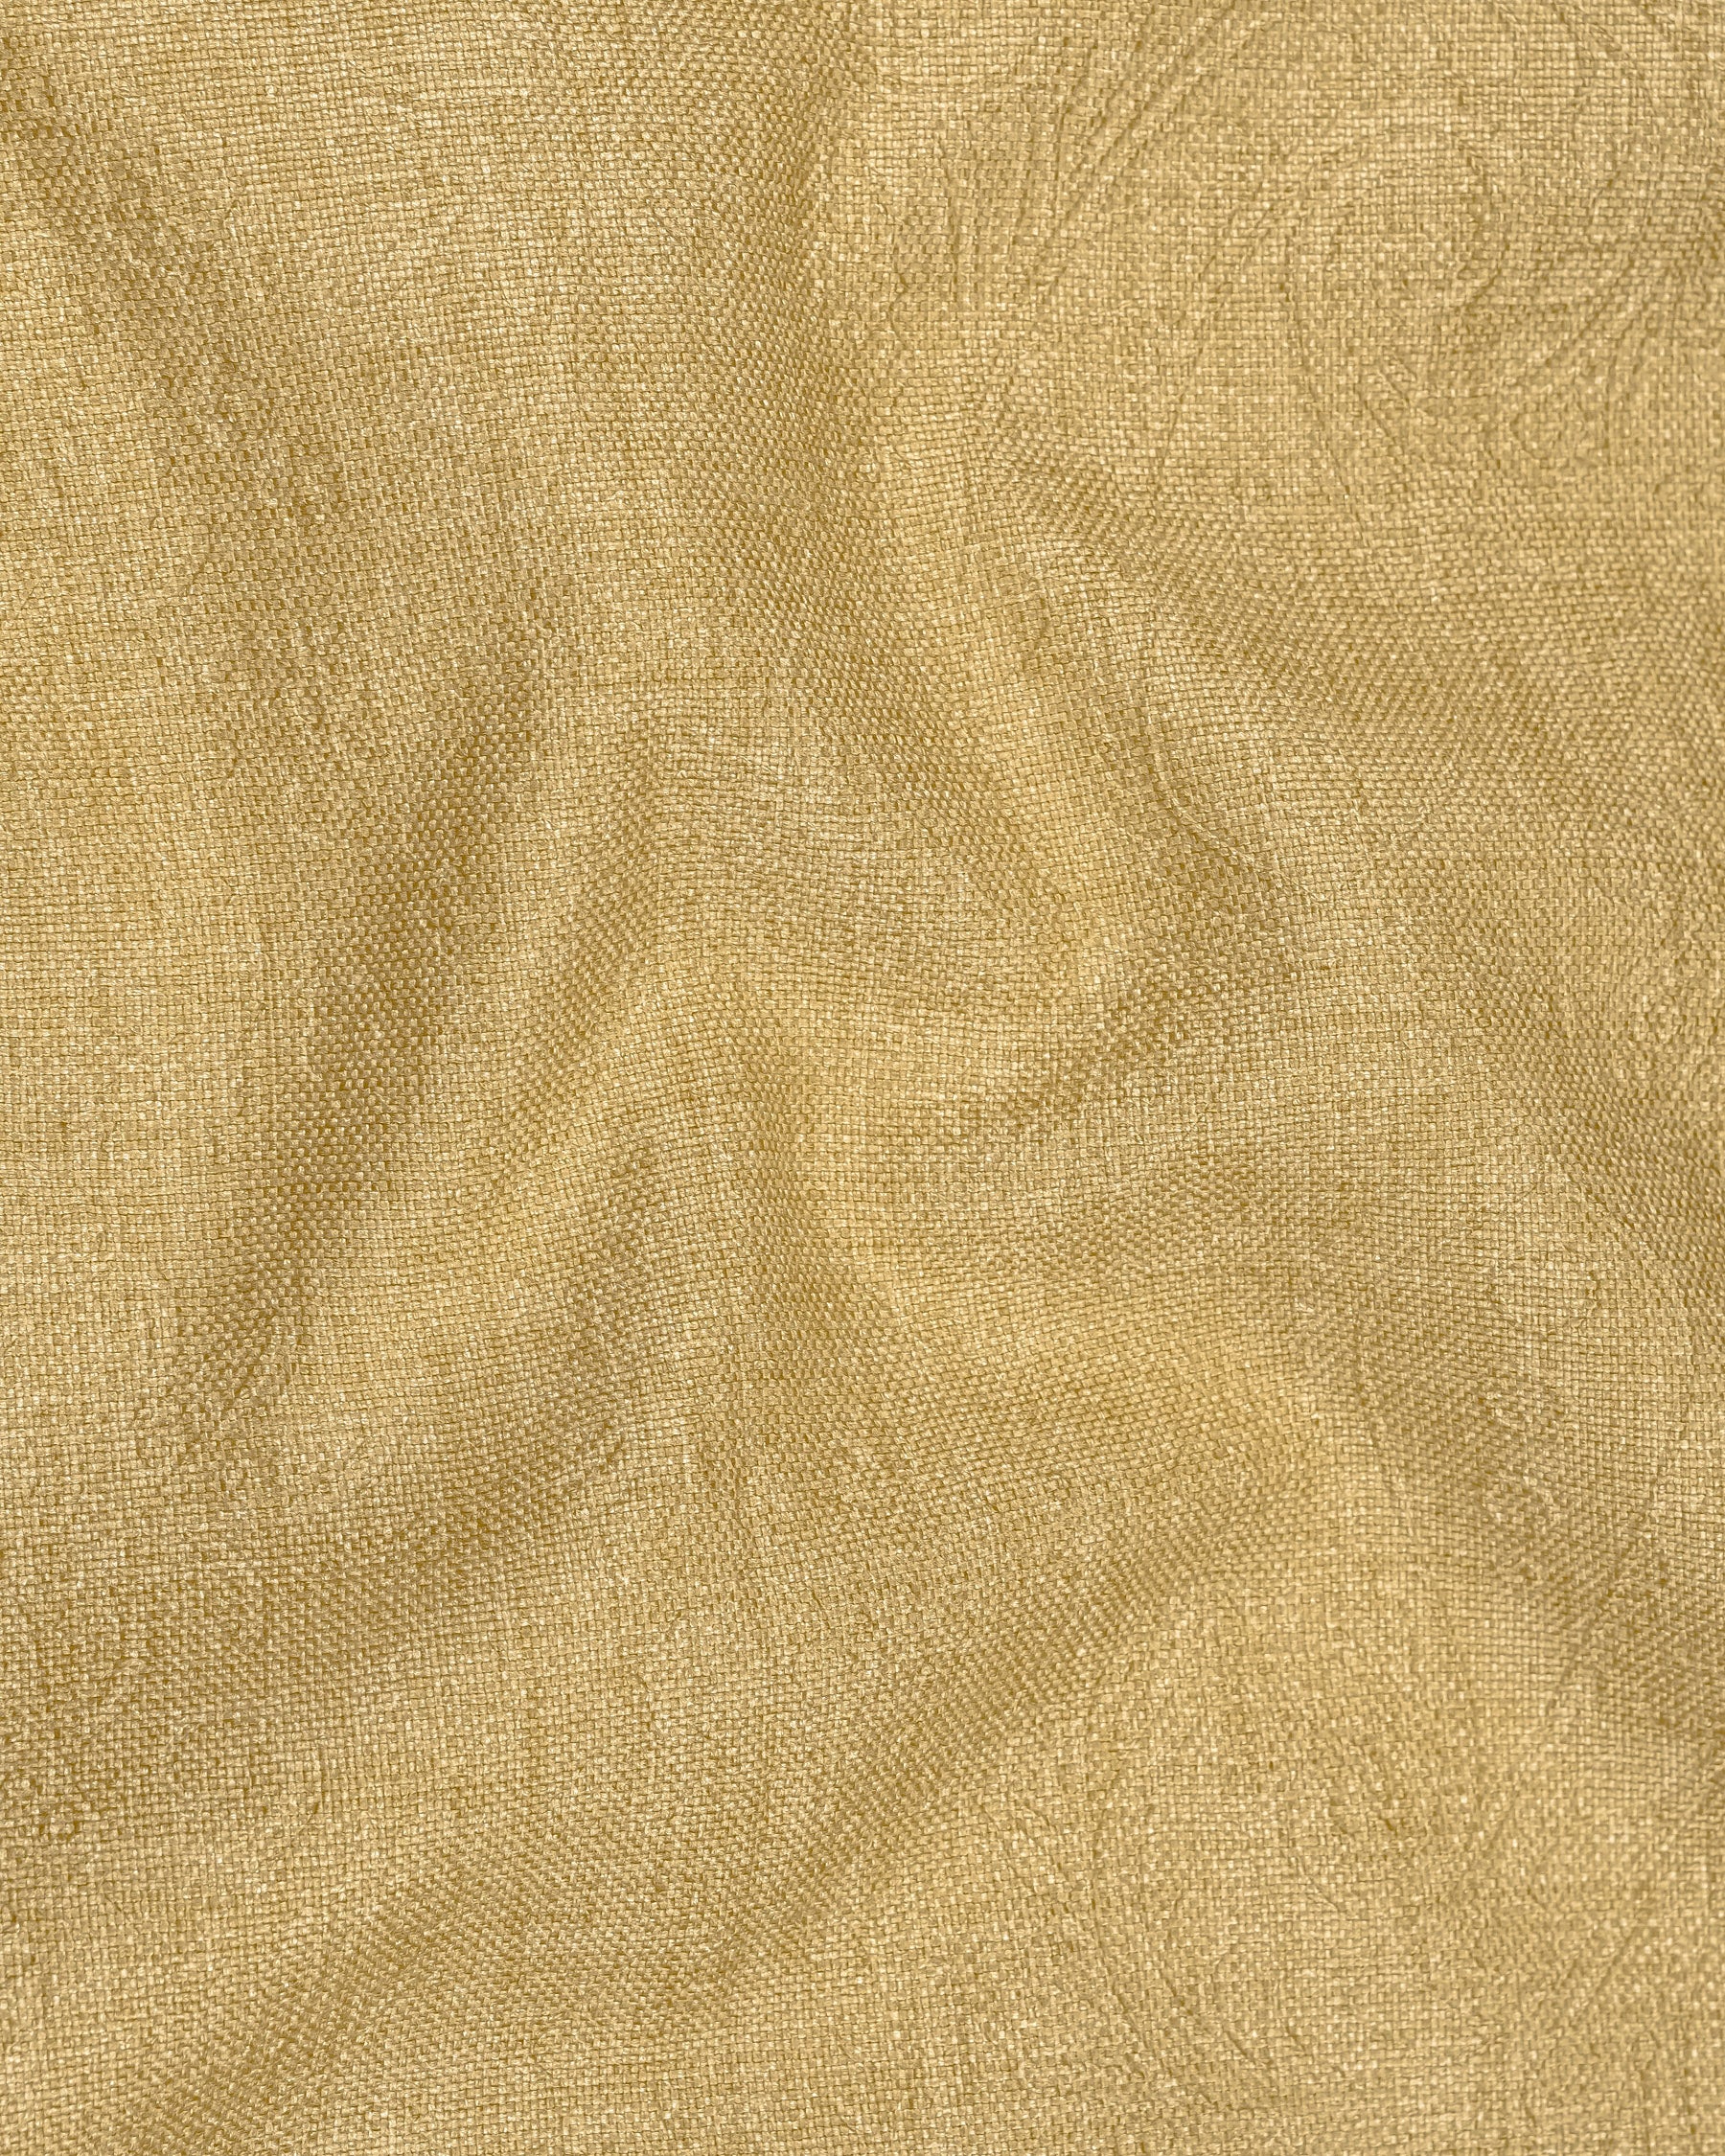 Tumbleweed Matt Gold Embossed Chintz Textured Waistcoat V2101-36, V2101-38, V2101-40, V2101-42, V2101-44, V2101-46, V2101-48, V2101-50, V2101-52, V2101-54, V2101-56, V2101-58, V2101-60